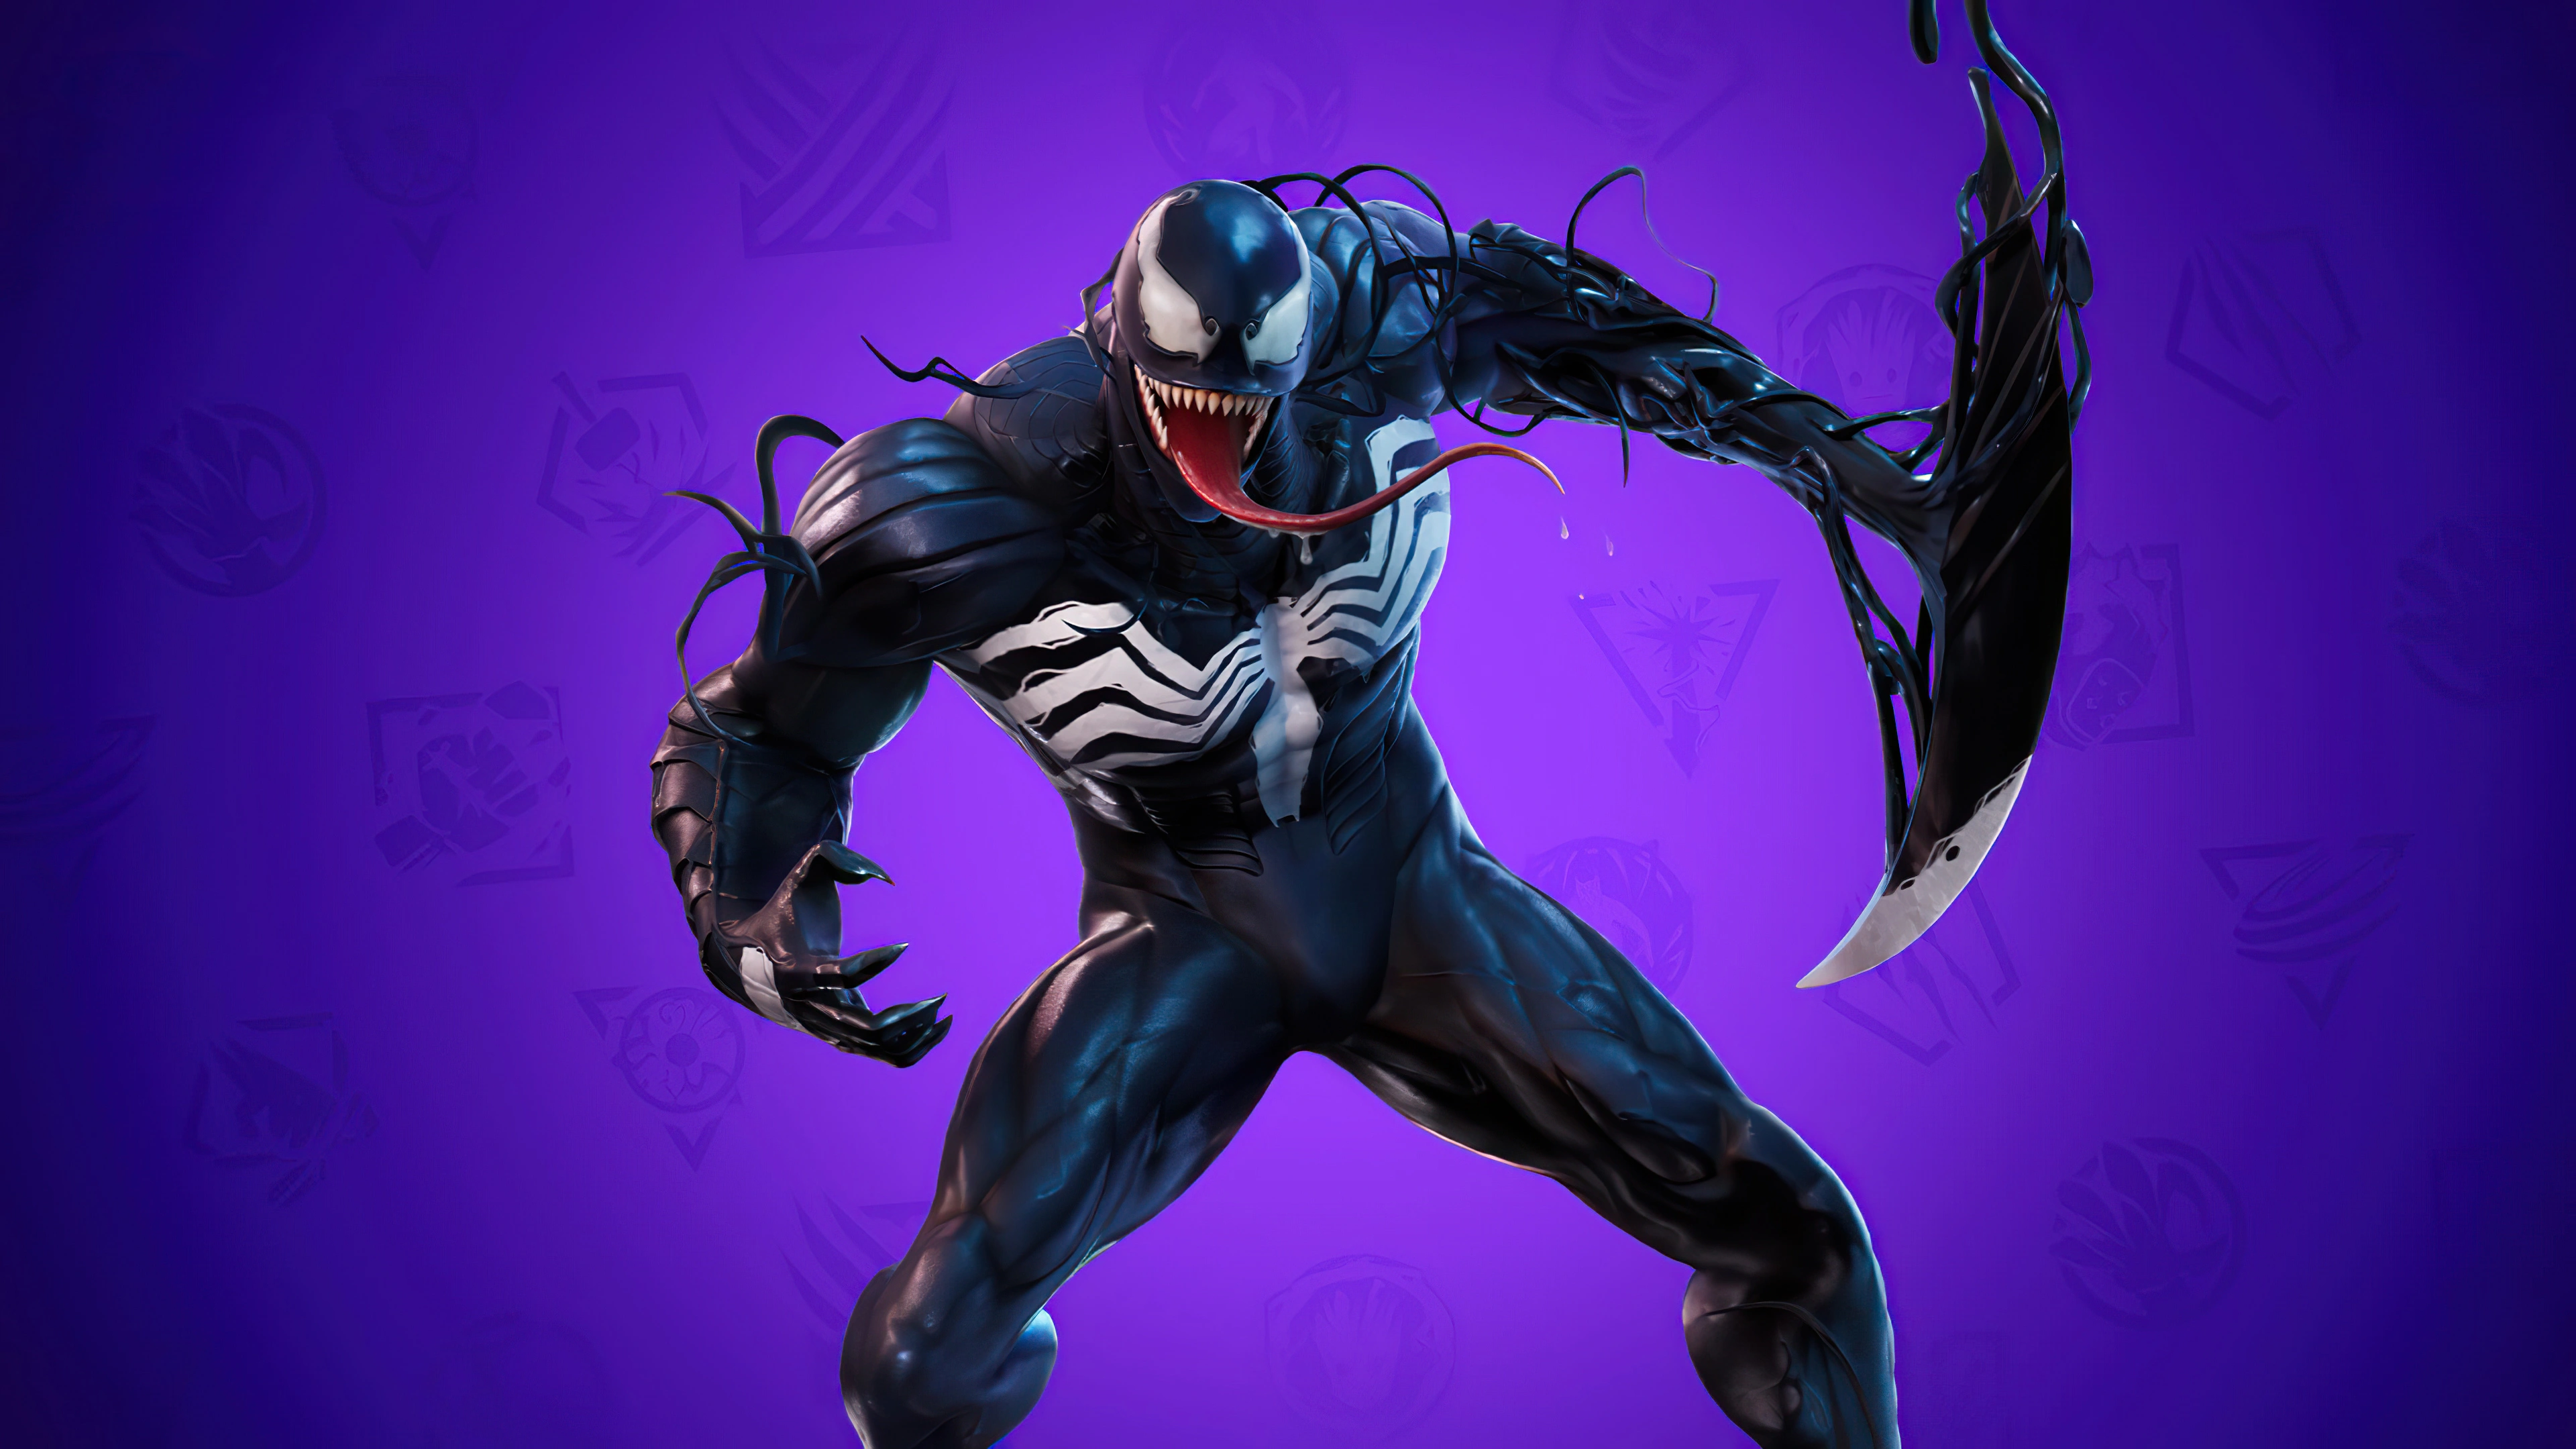 fortnite marvel series venom 4k 1614866311 - Fortnite Marvel Series Venom 4k - Fortnite Marvel Series Venom 4k wallpapers